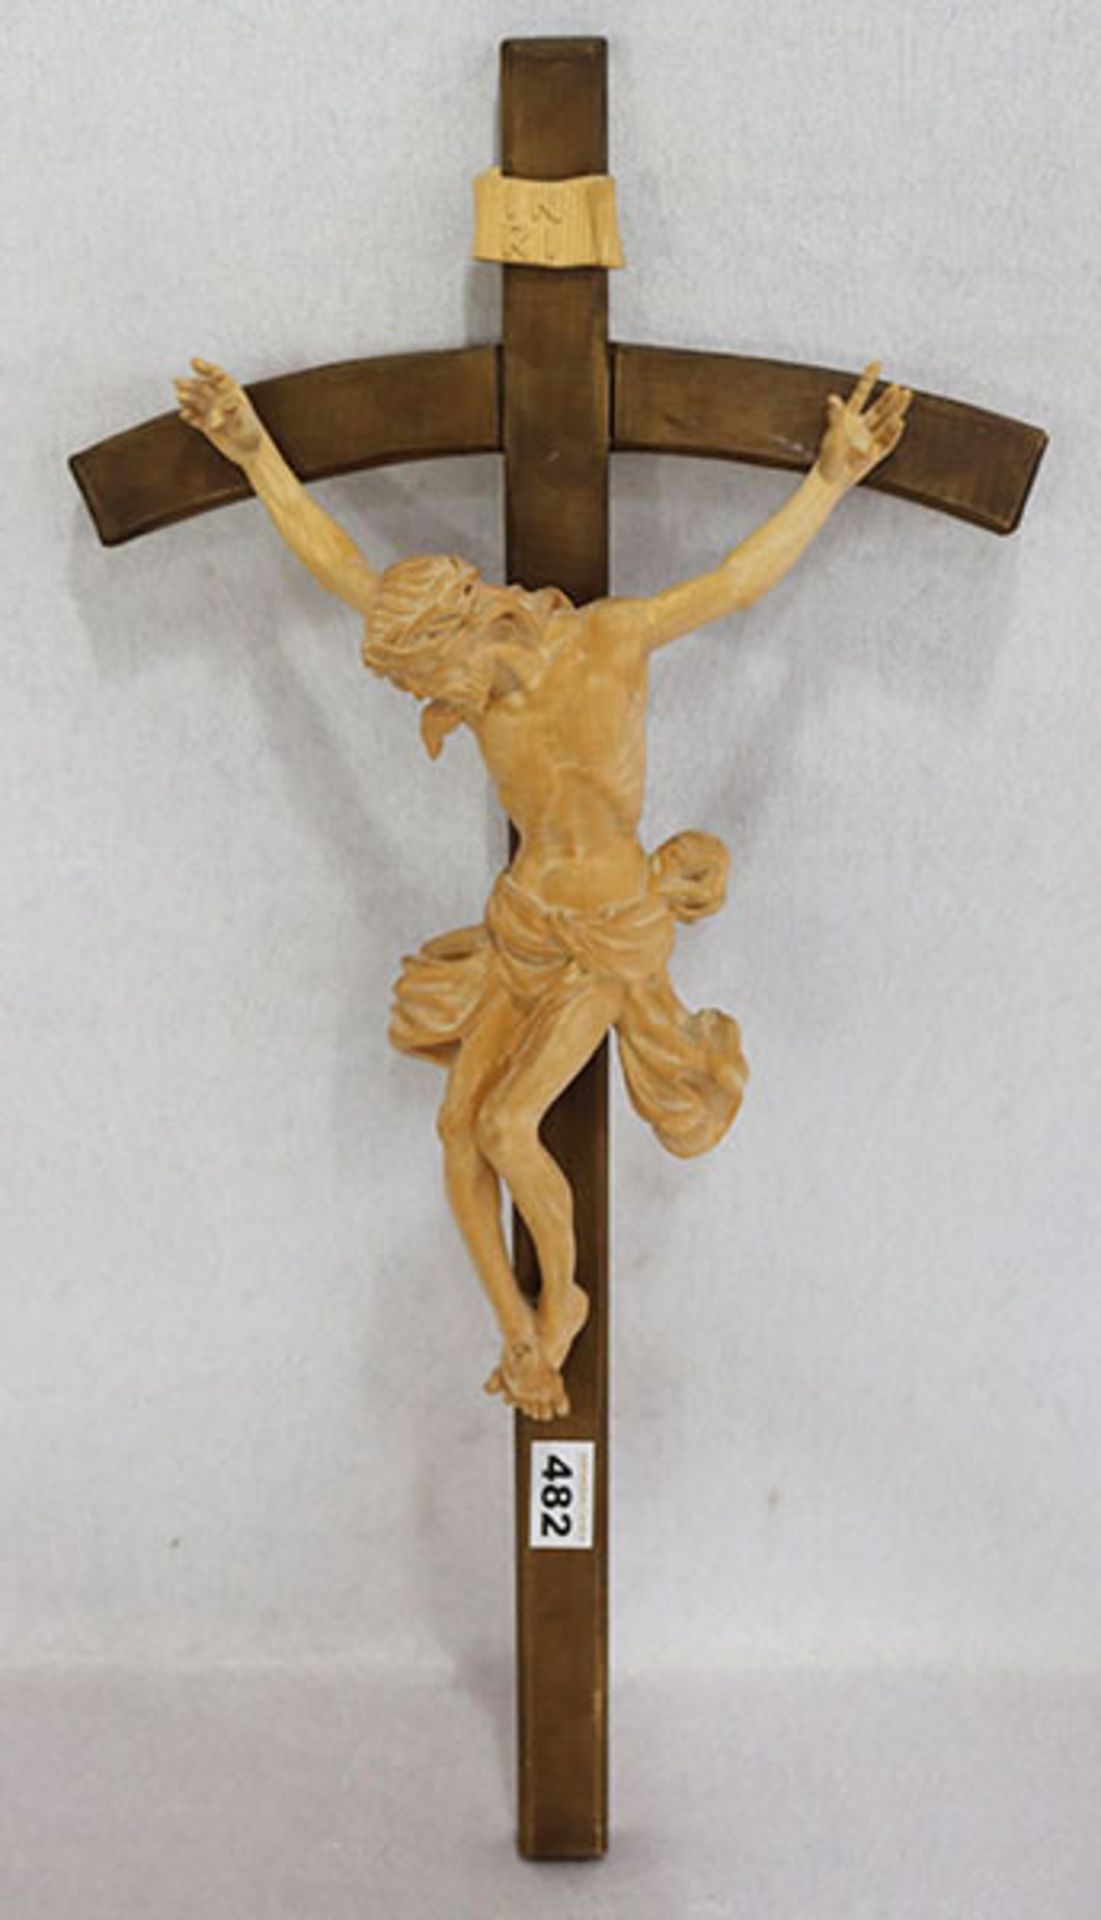 Holzkreuz mit Korpus Christi, rückseitig bez. 12-1987 Wedhorn, H 61,5 cm, B 31 cm